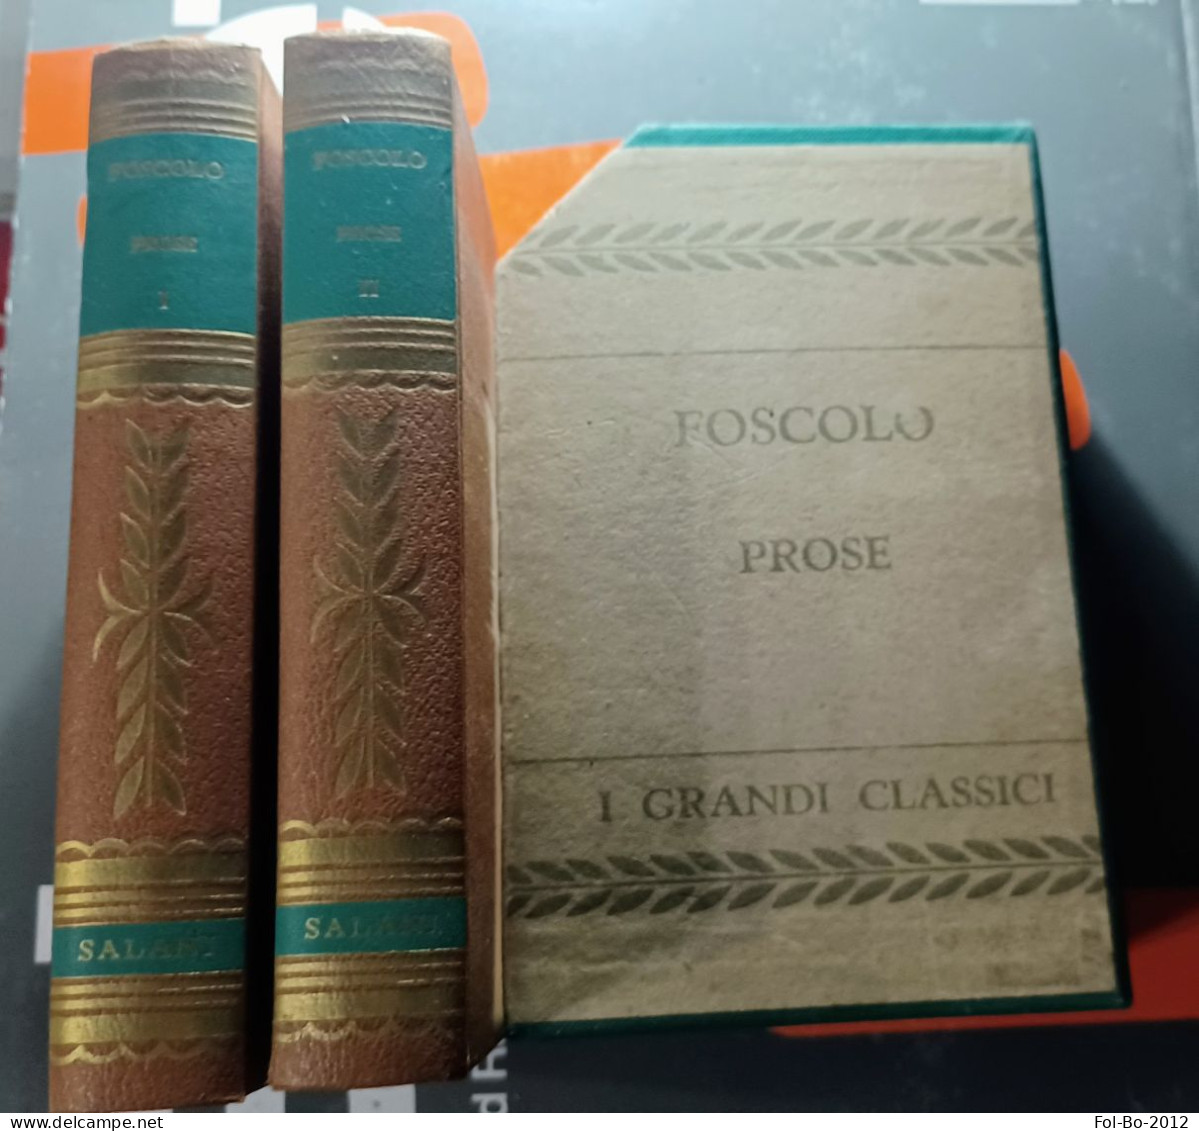 Foscolo Prose Salani Editore Anno ? - Poésie